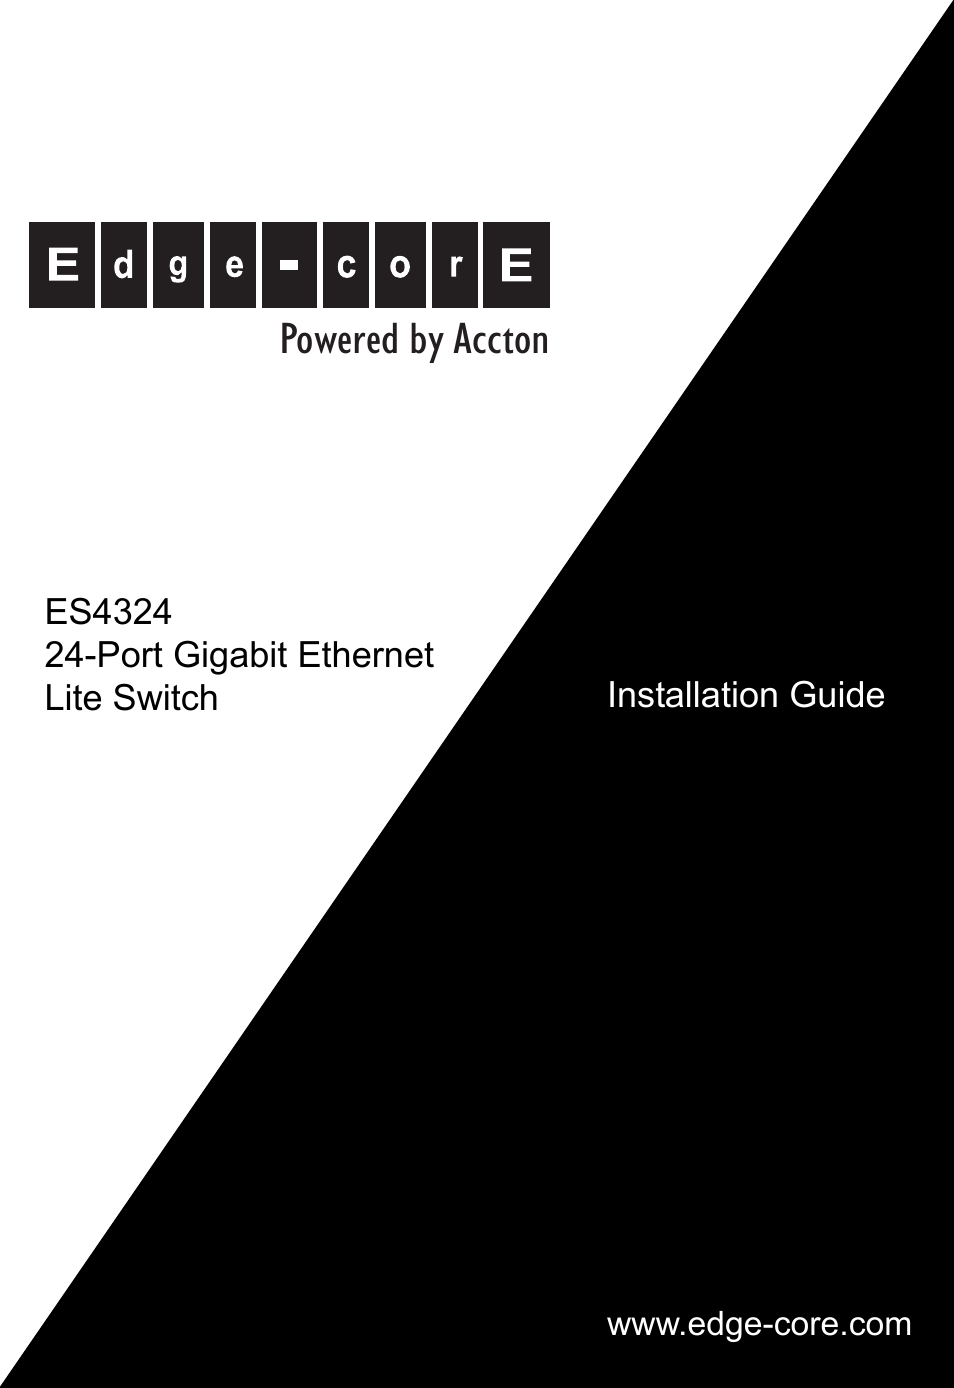 Edge-corE 24-Port Gigabit Ethernet Lite Switch ES4324